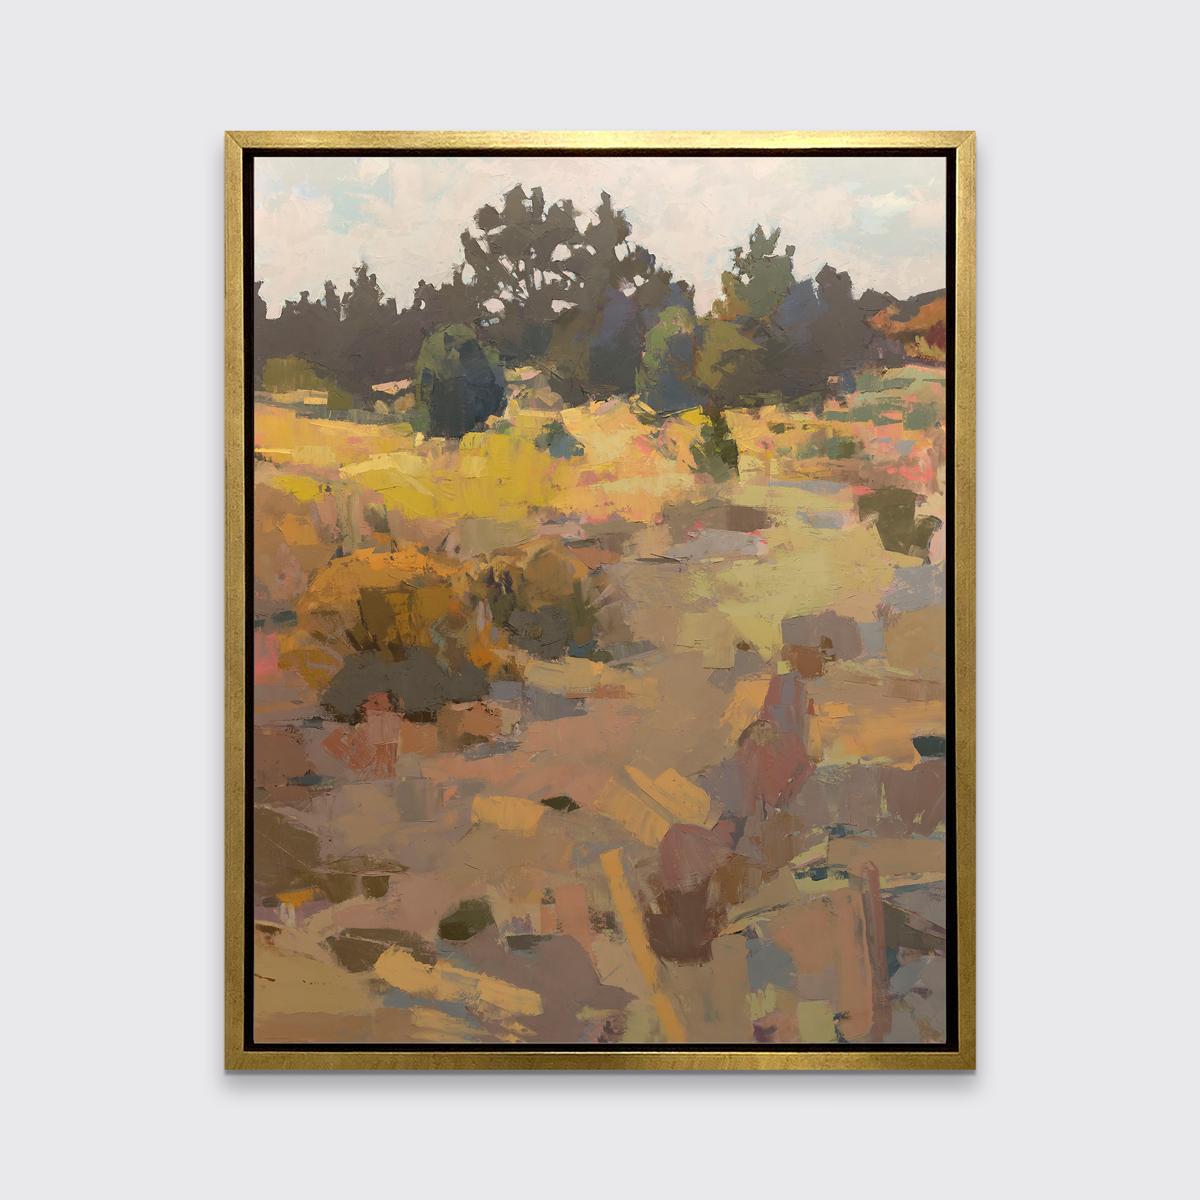 Diese limitierte Auflage des Giclée-Landschaftsdrucks von Bri Custer hat eine Auflage von 195 Stück. Sie zeichnet sich durch eine warme, erdige Farbpalette aus. Dieses auf Leinwand gedruckte Giclée wird in einem warmen, silberfarbenen Floater-Rahmen